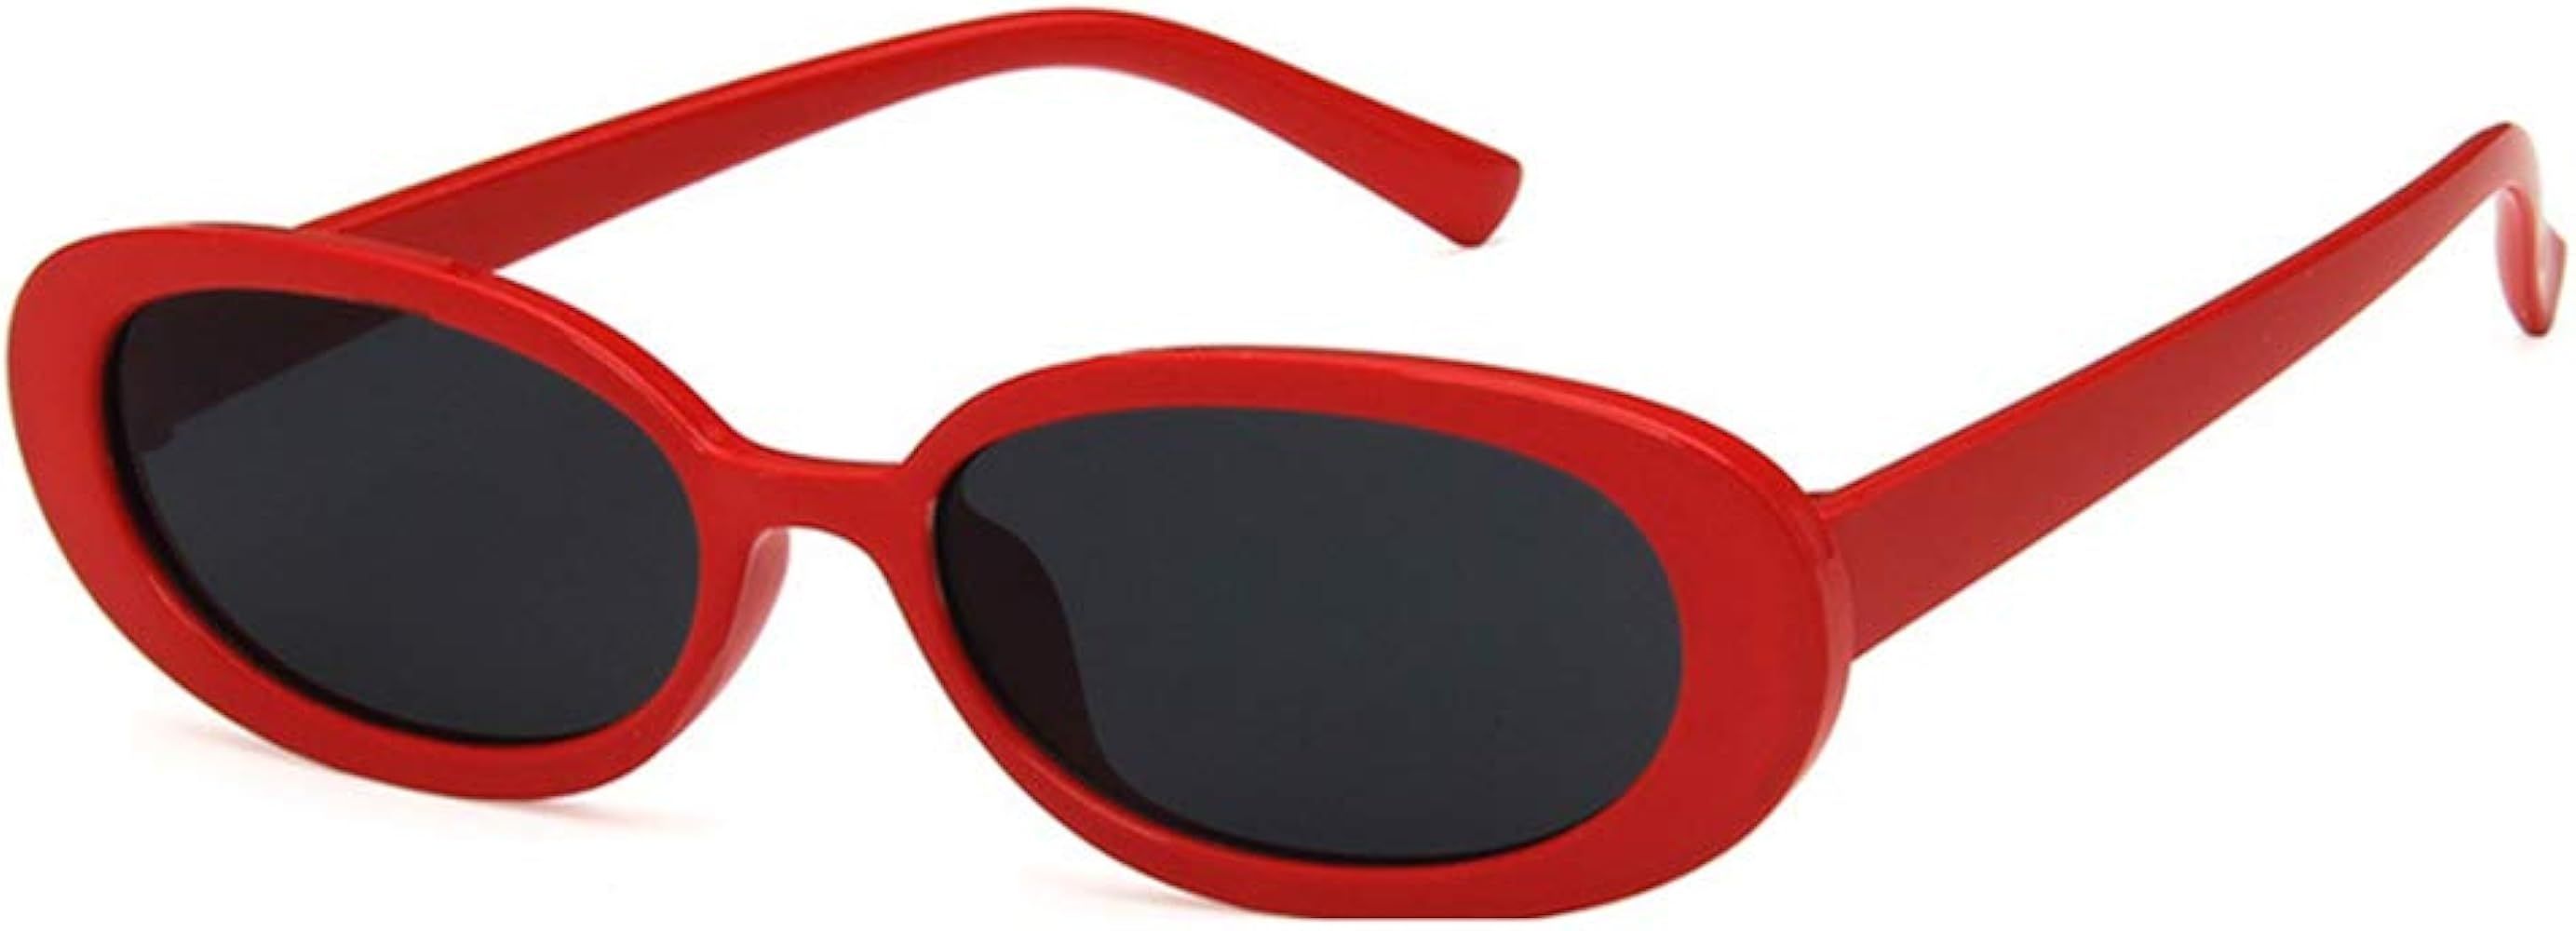 Shiratori Women's Retro Oval Holiday Sunglasses Non-polarized UV400 | Amazon (US)